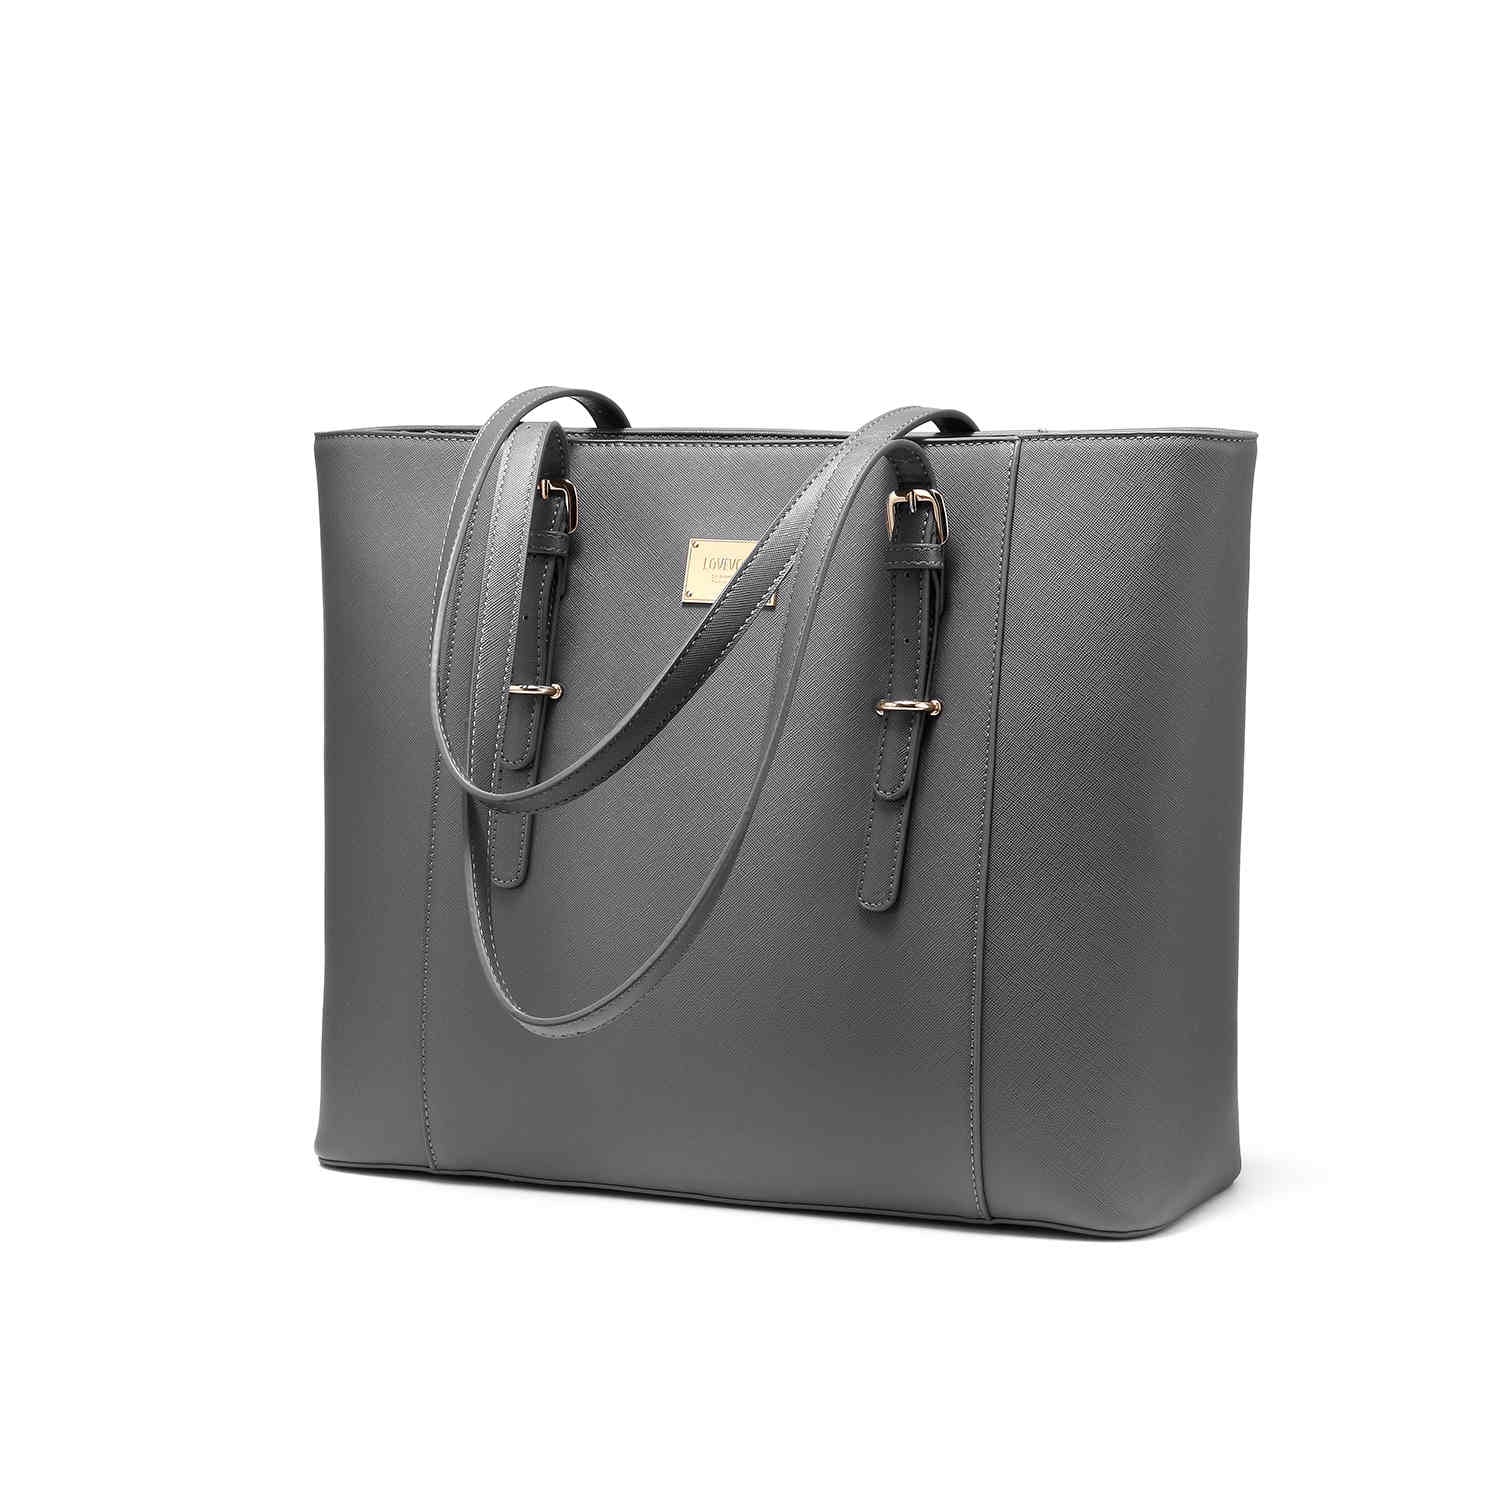 Laptop Bag for Women, Large Capacity Computer Tote Bag Handbag Shoulder Bag  Purse Business Work Briefcase Travel Bag, 15.6-inch, Brown Pattern 